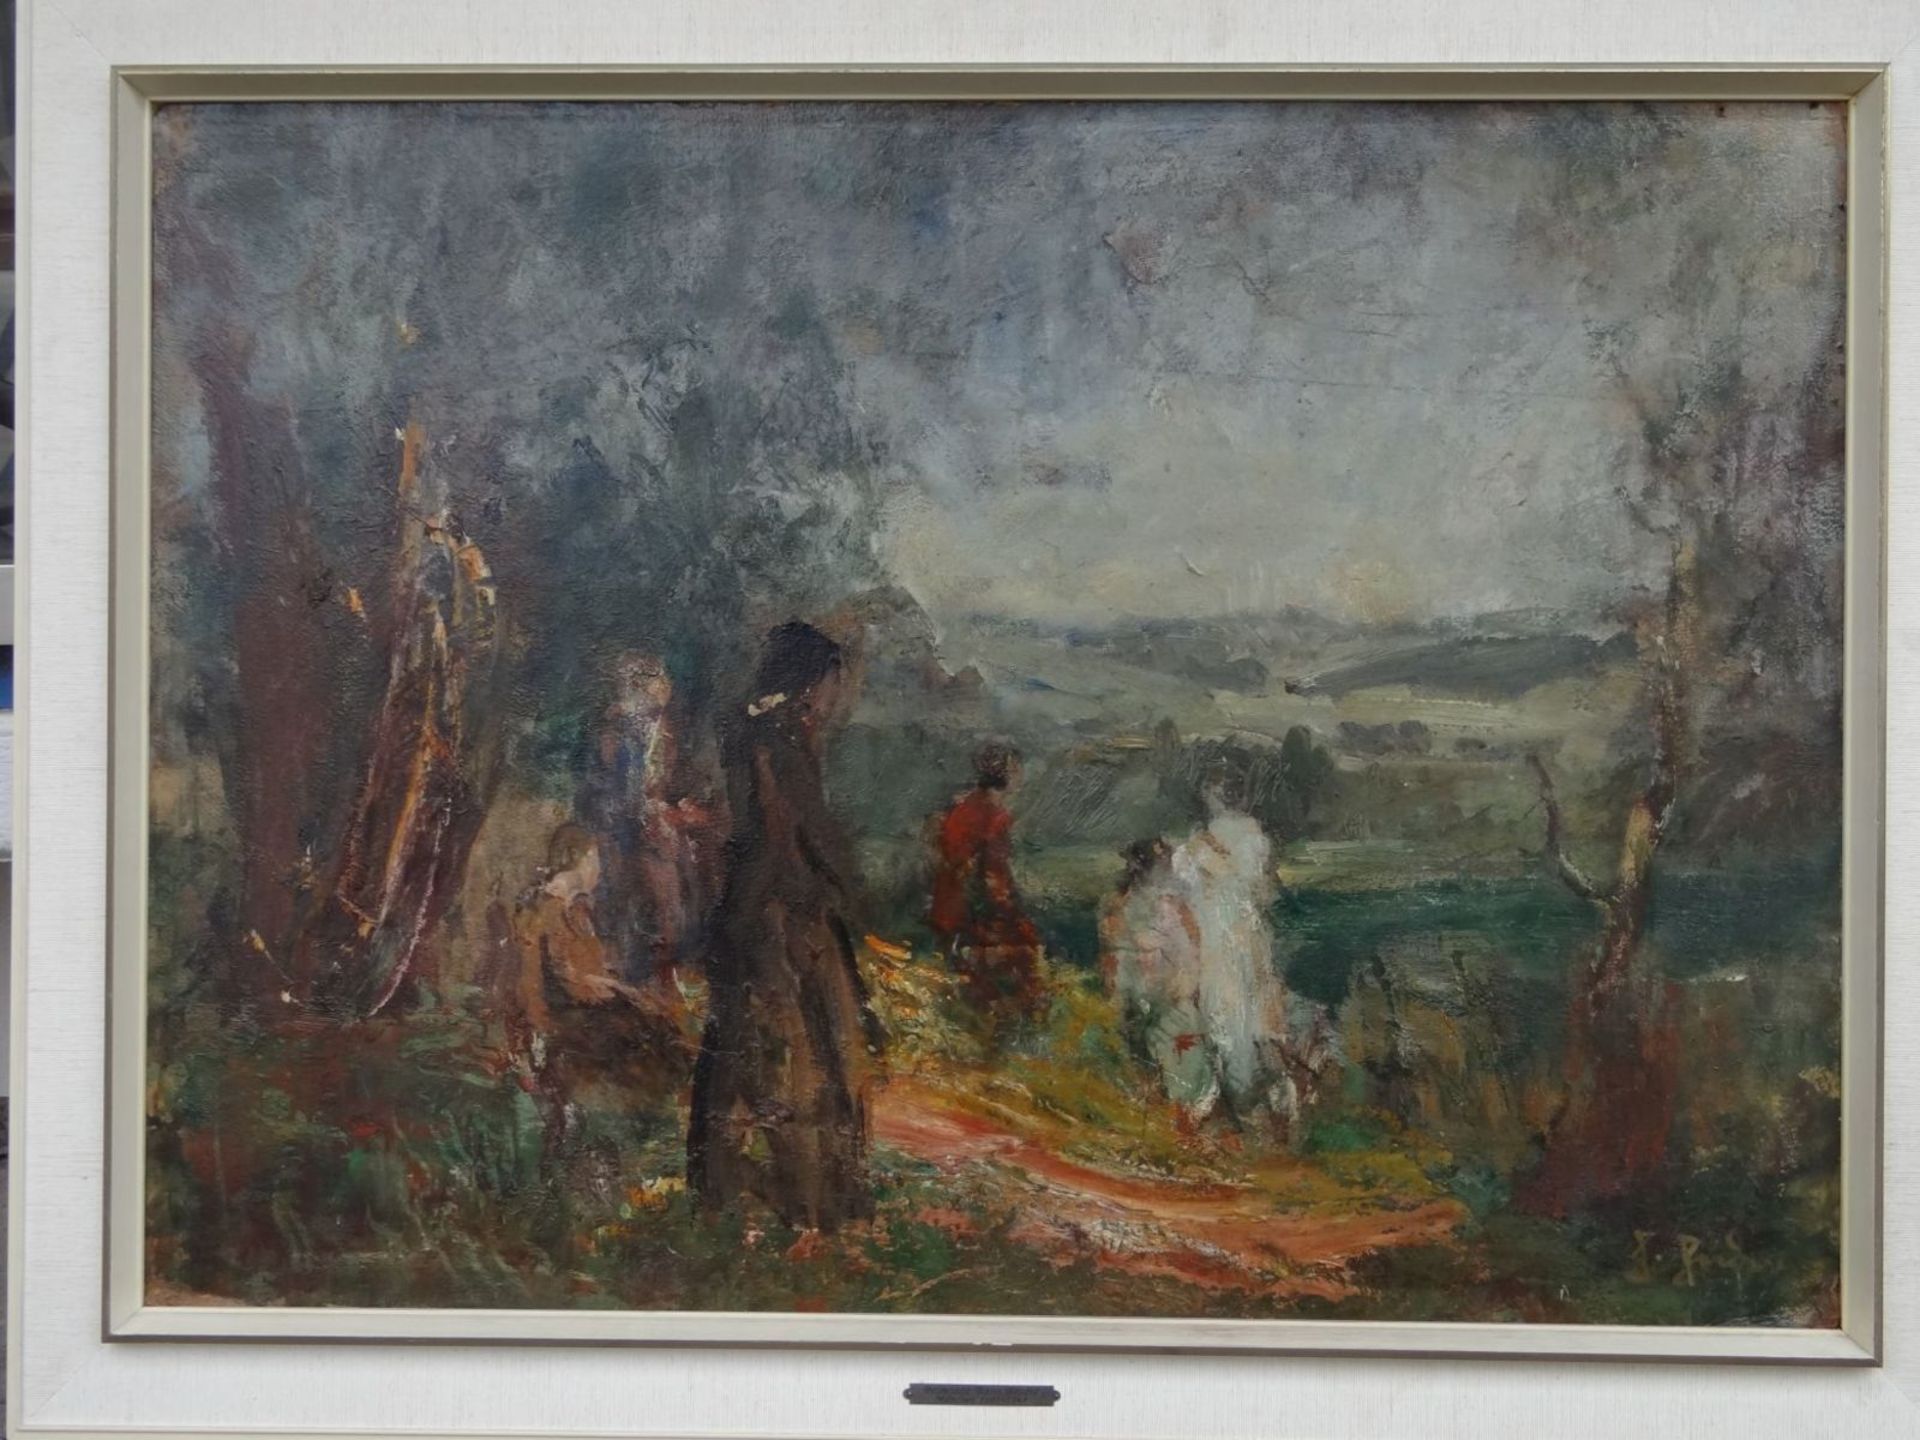 Hans HEIDER (1861-1947) "Blick in die Ferne" verso betitelt, Öl/Leinen, gerahmt, RG 90x116 cm, mit